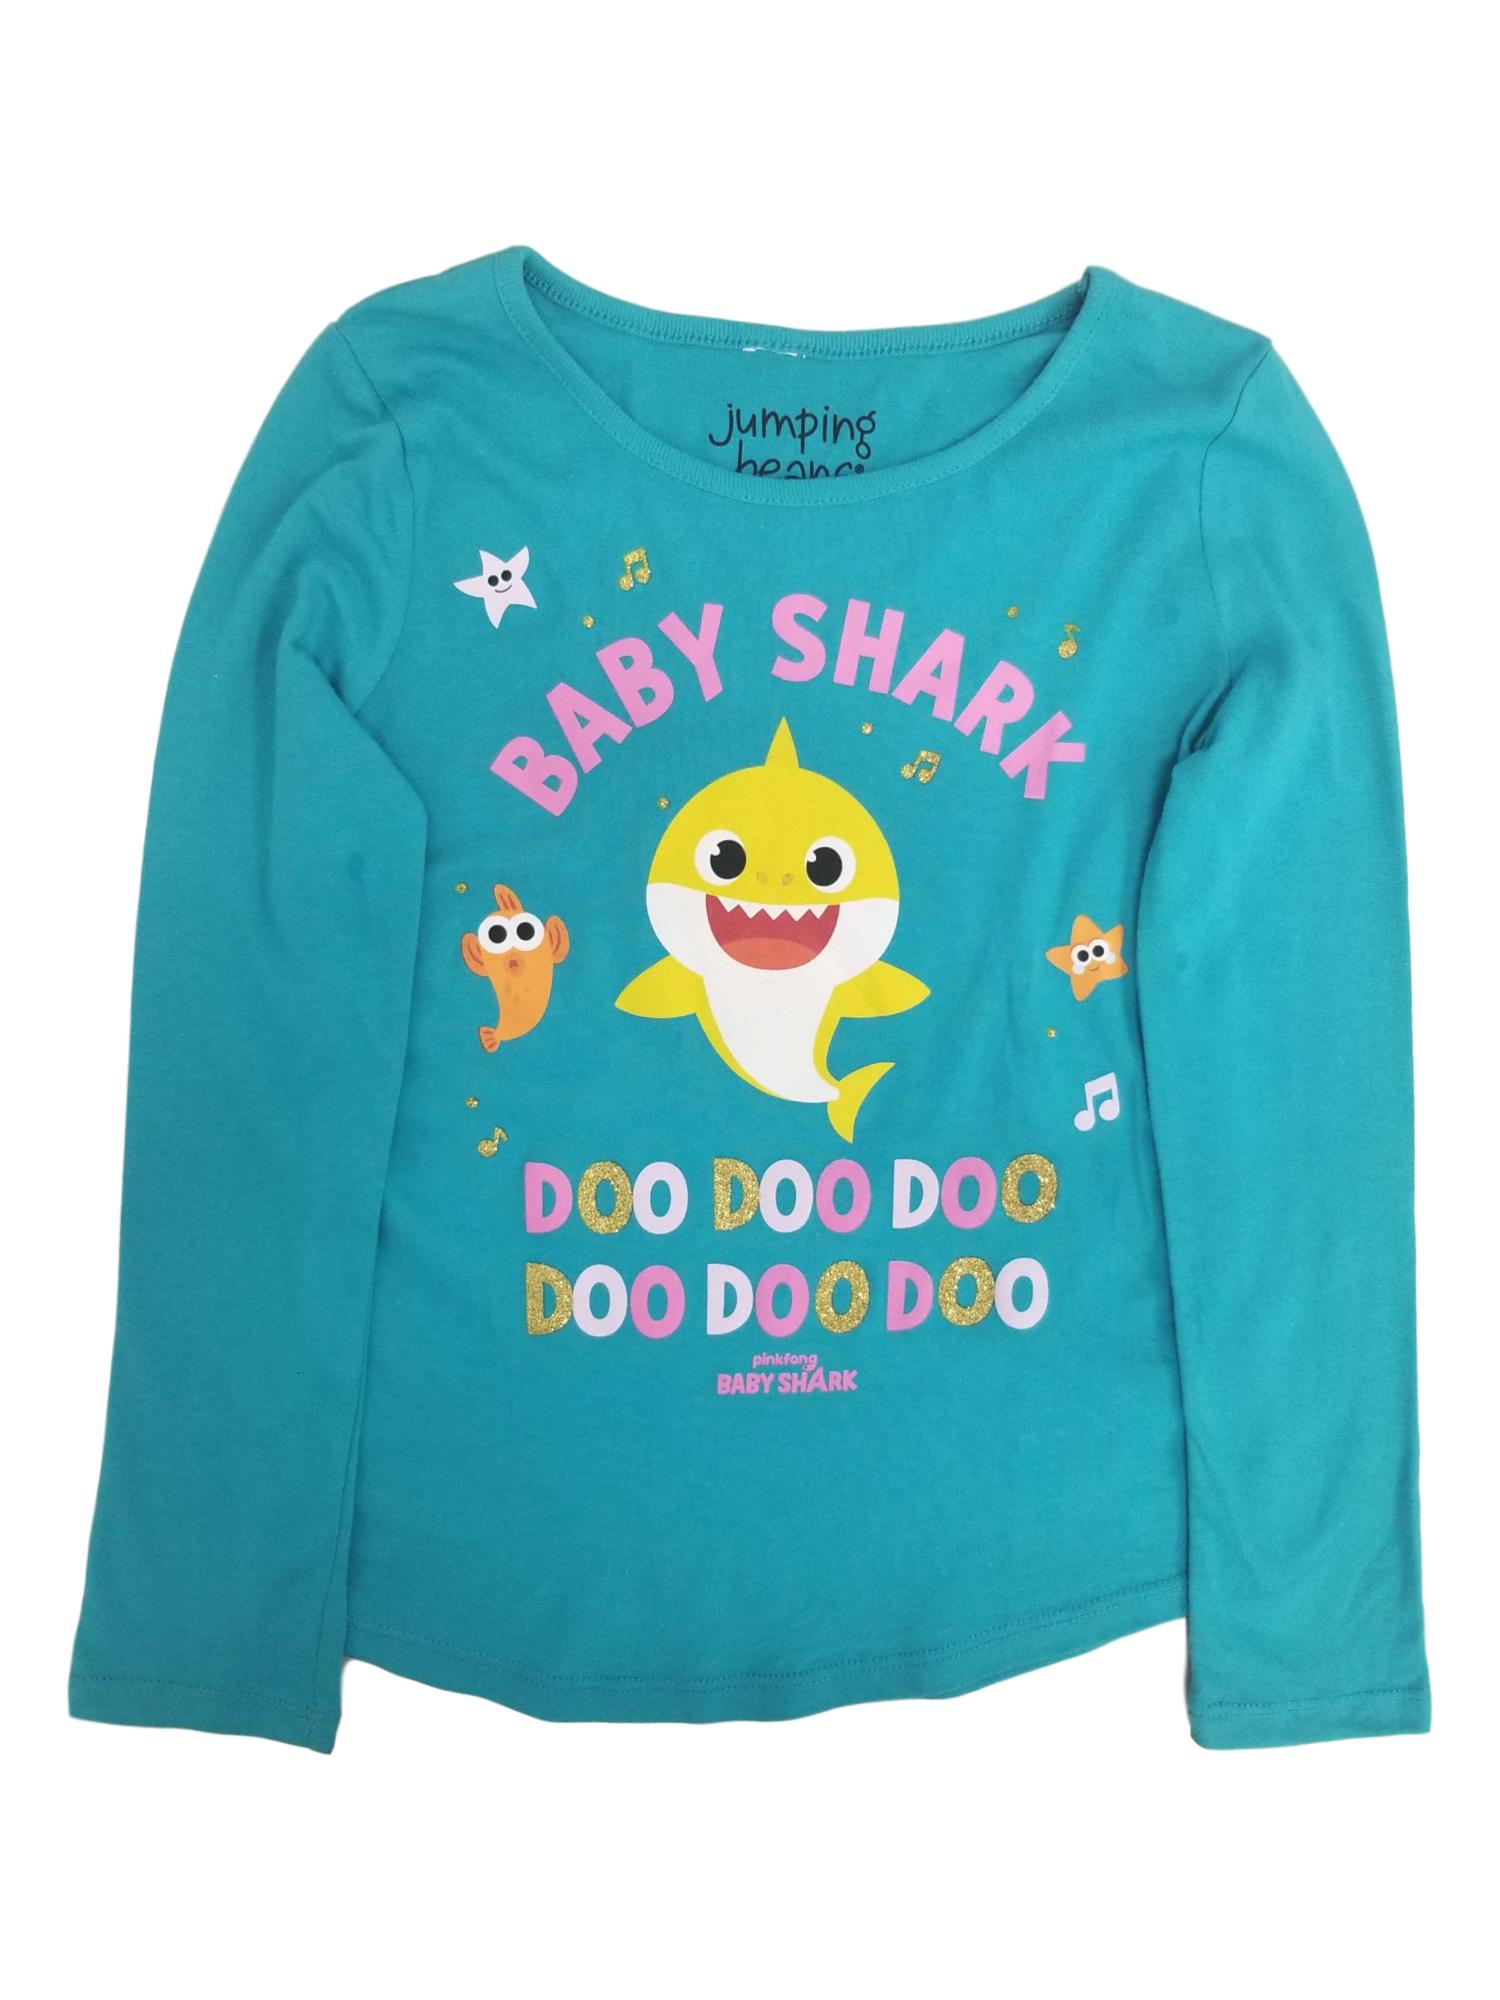 Baby Shark Jumping Beans Baby Shark Girls Long Sleeve Blue Glitter T-Shirt Tee Shirt